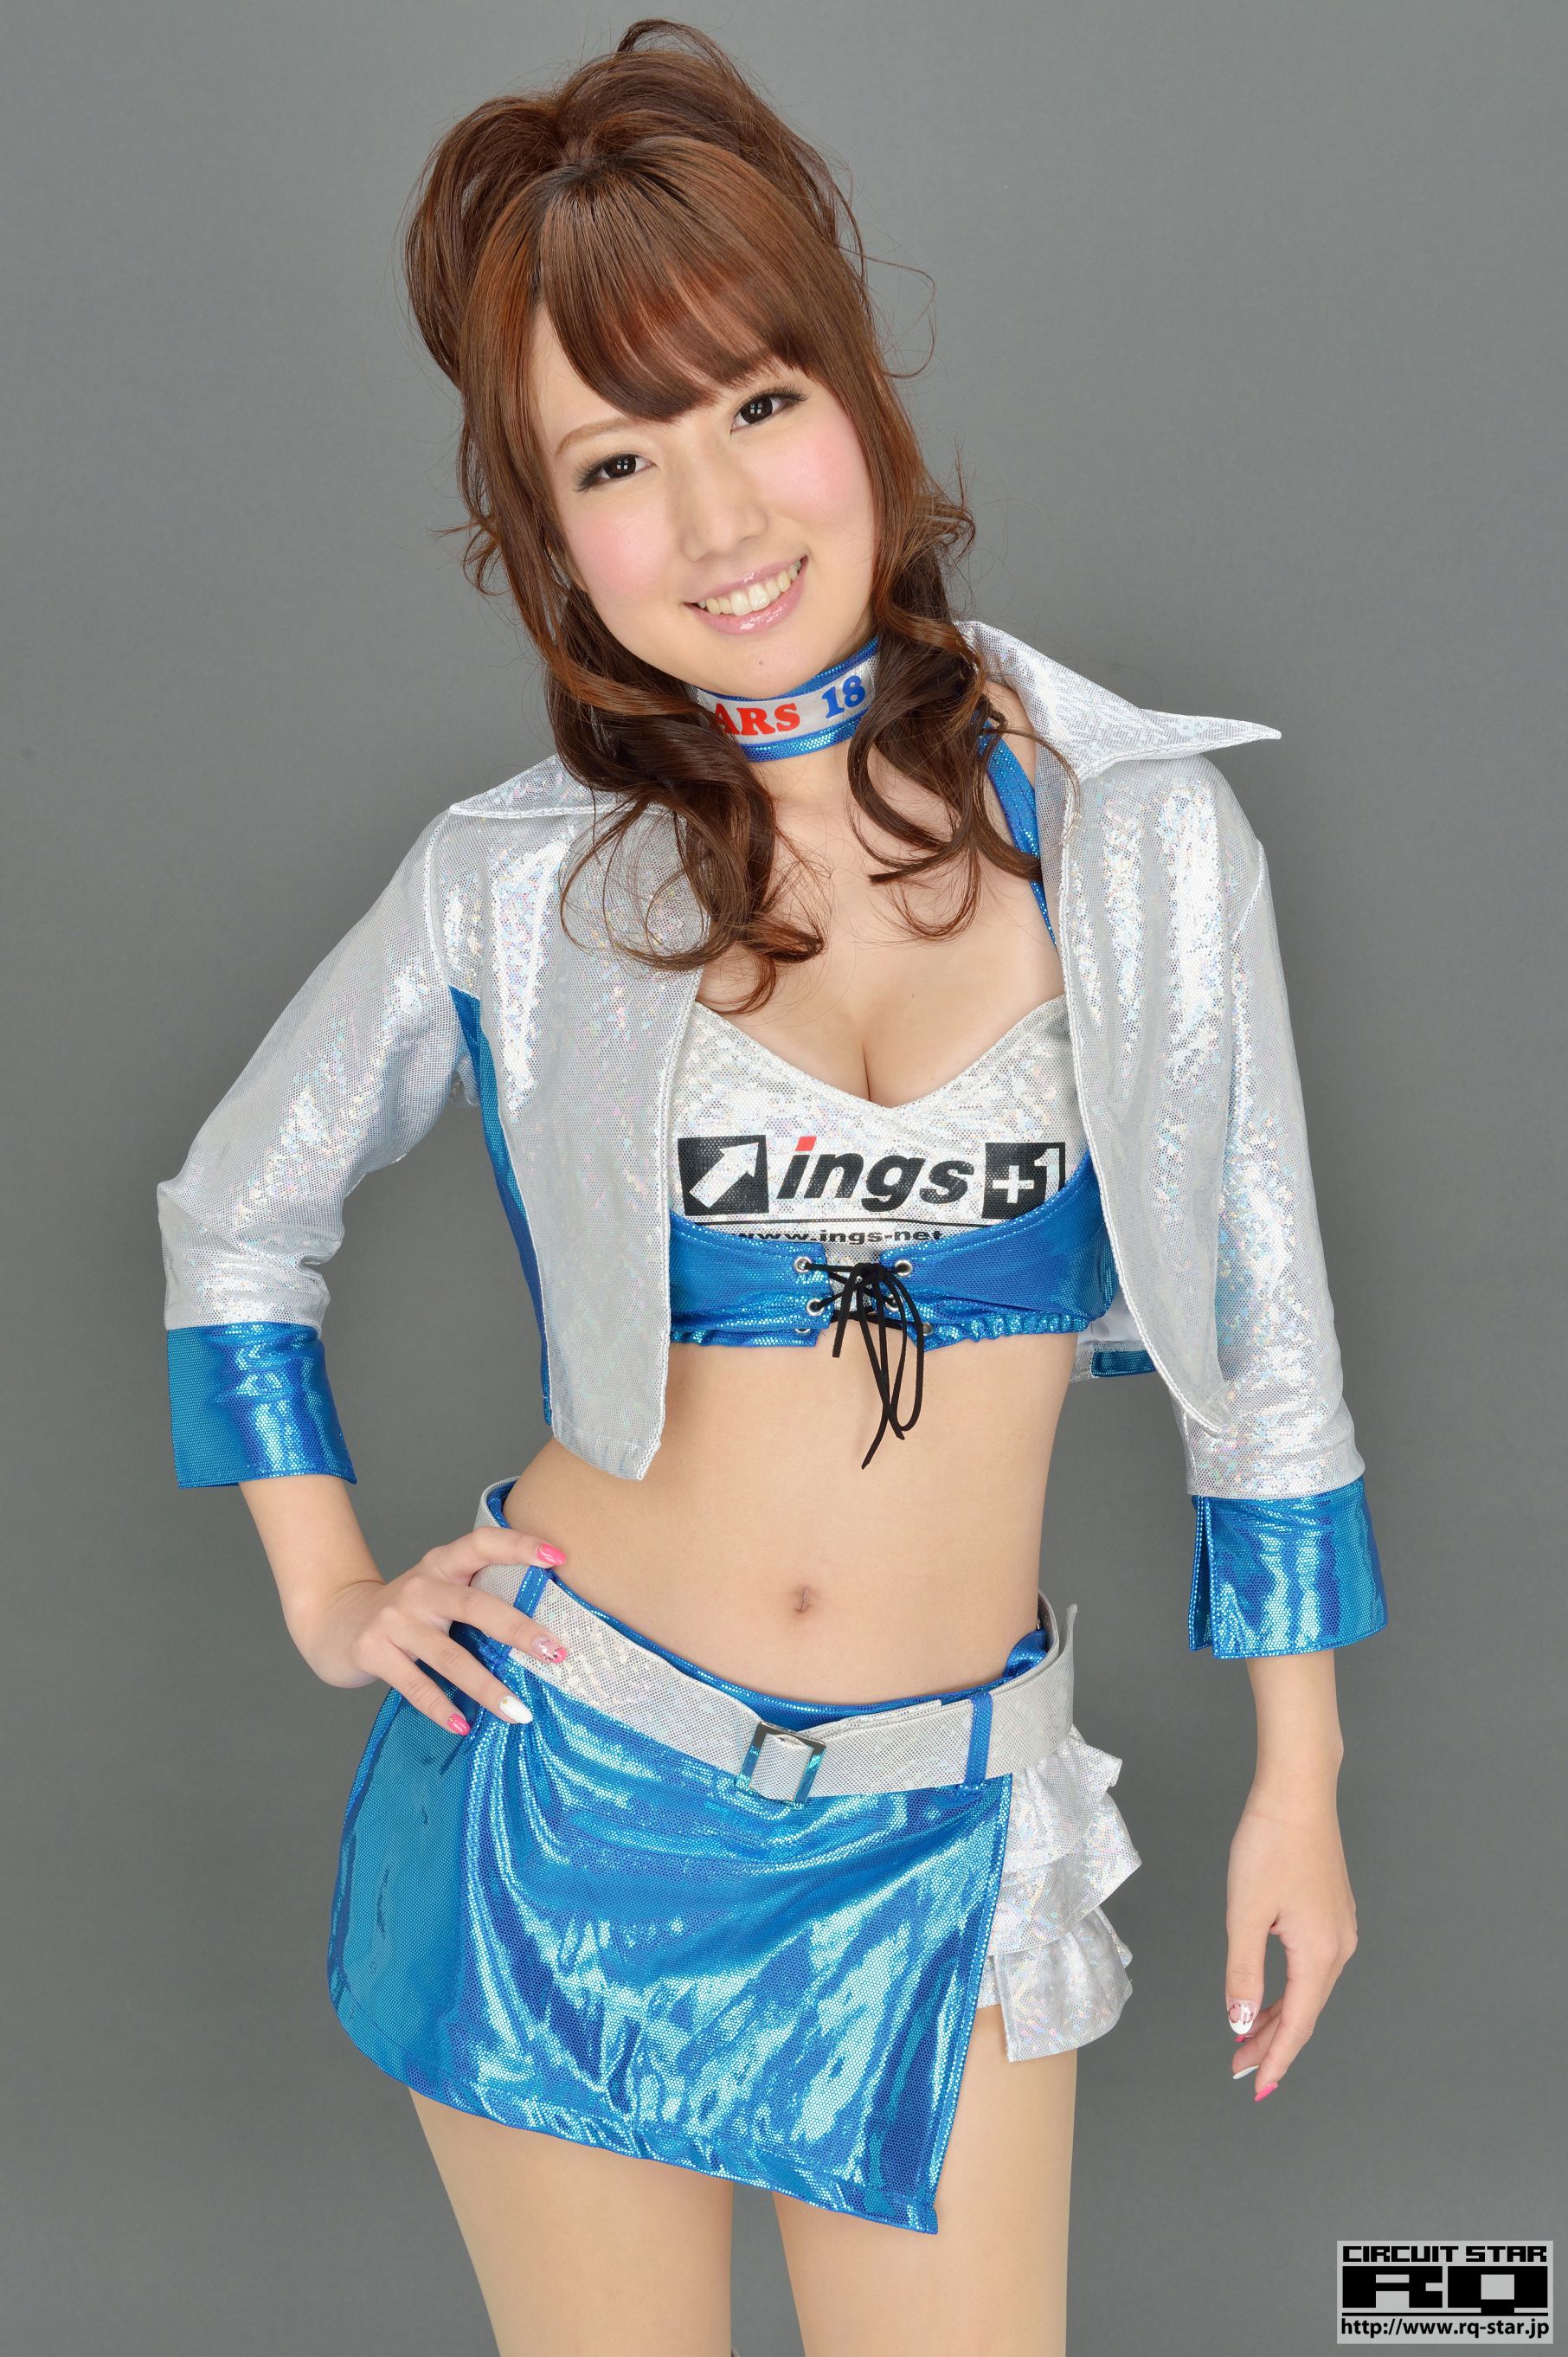 [RQ-STAR] NO.01002 Nanami Takahashi 高橋七海 Race Queen 